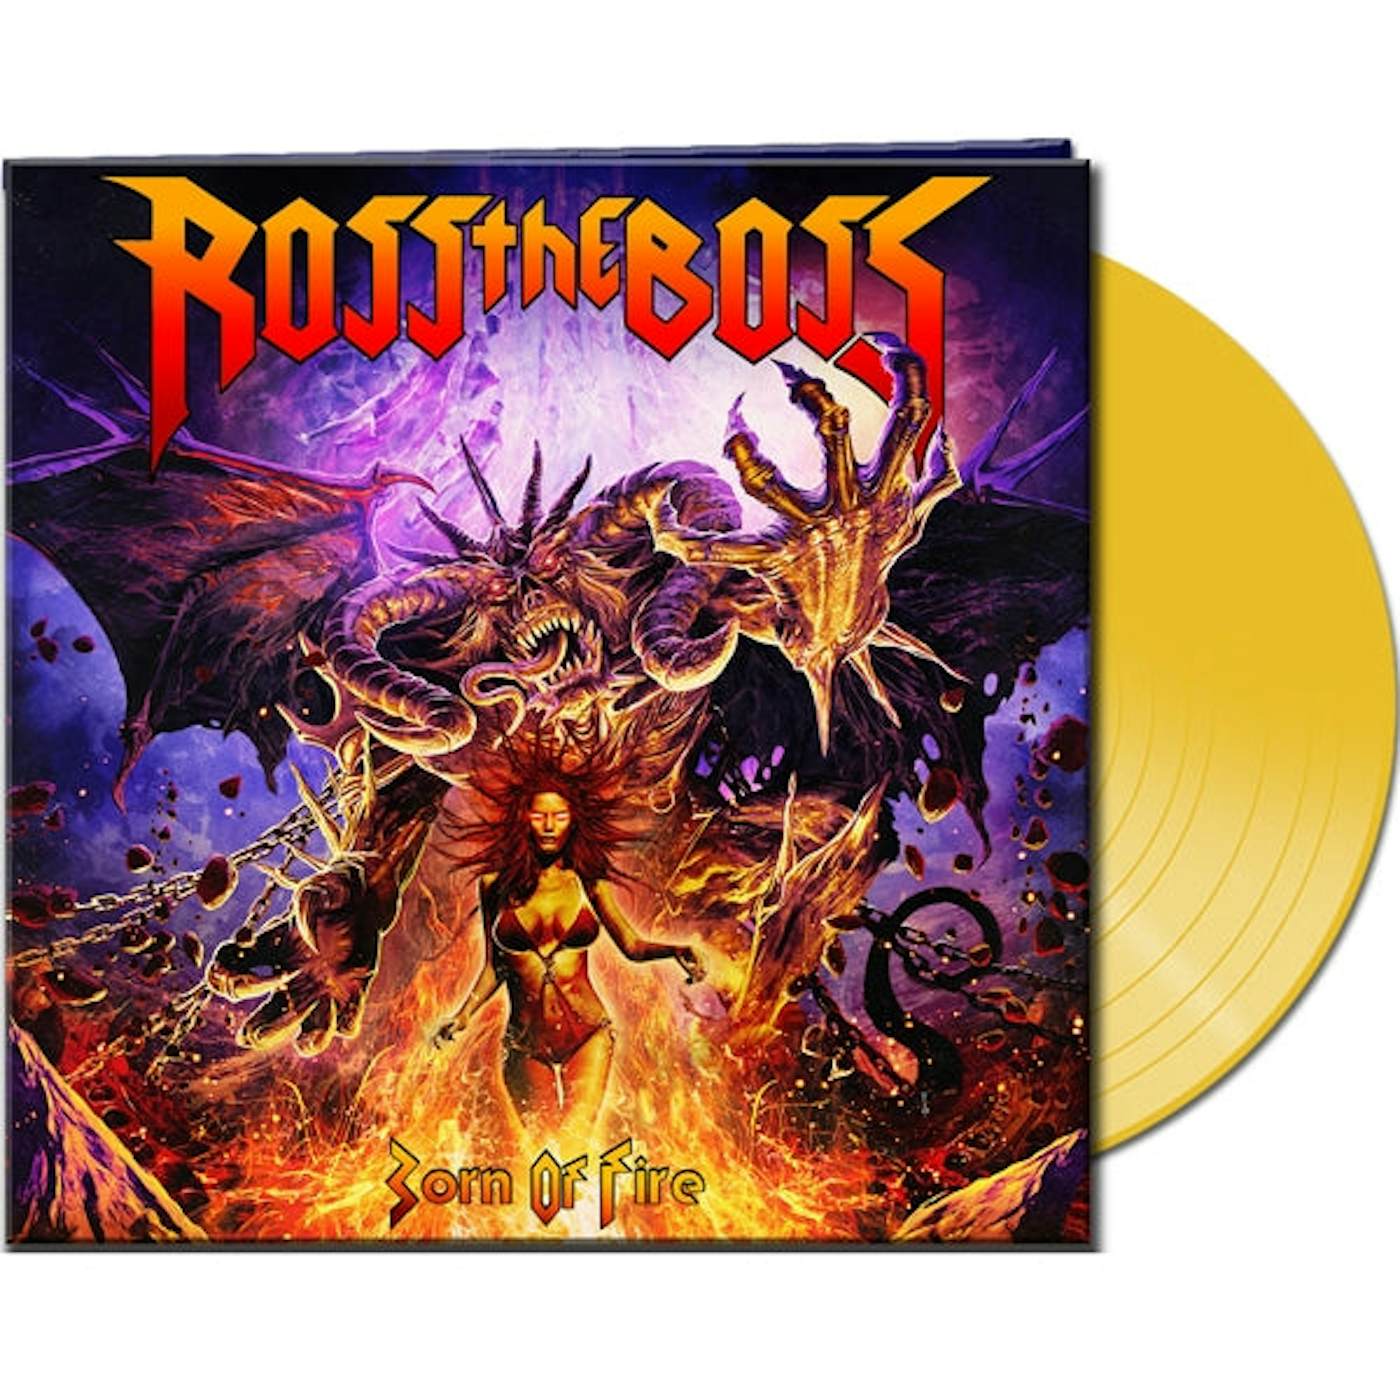 Ross The Boss LP - Born Of Fire (Trans Yellow Vinyl)